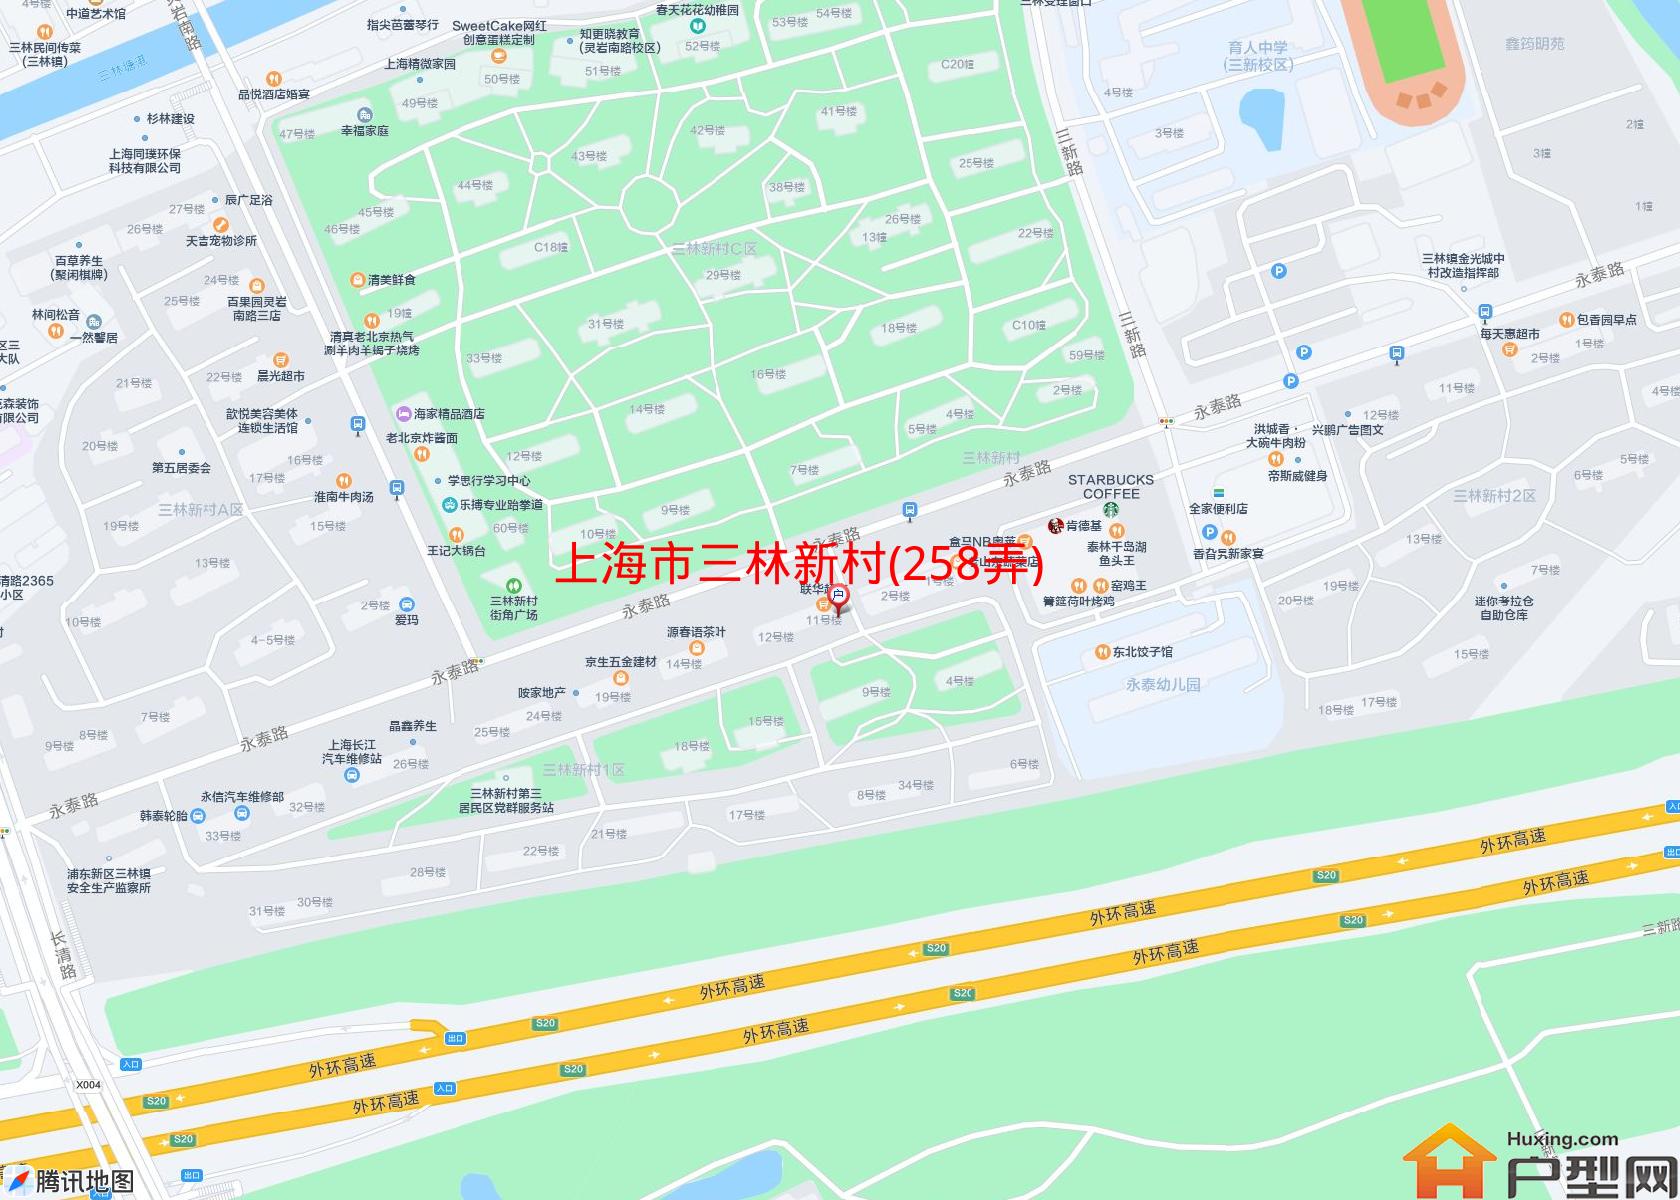 三林新村(258弄)小区 - 户型网